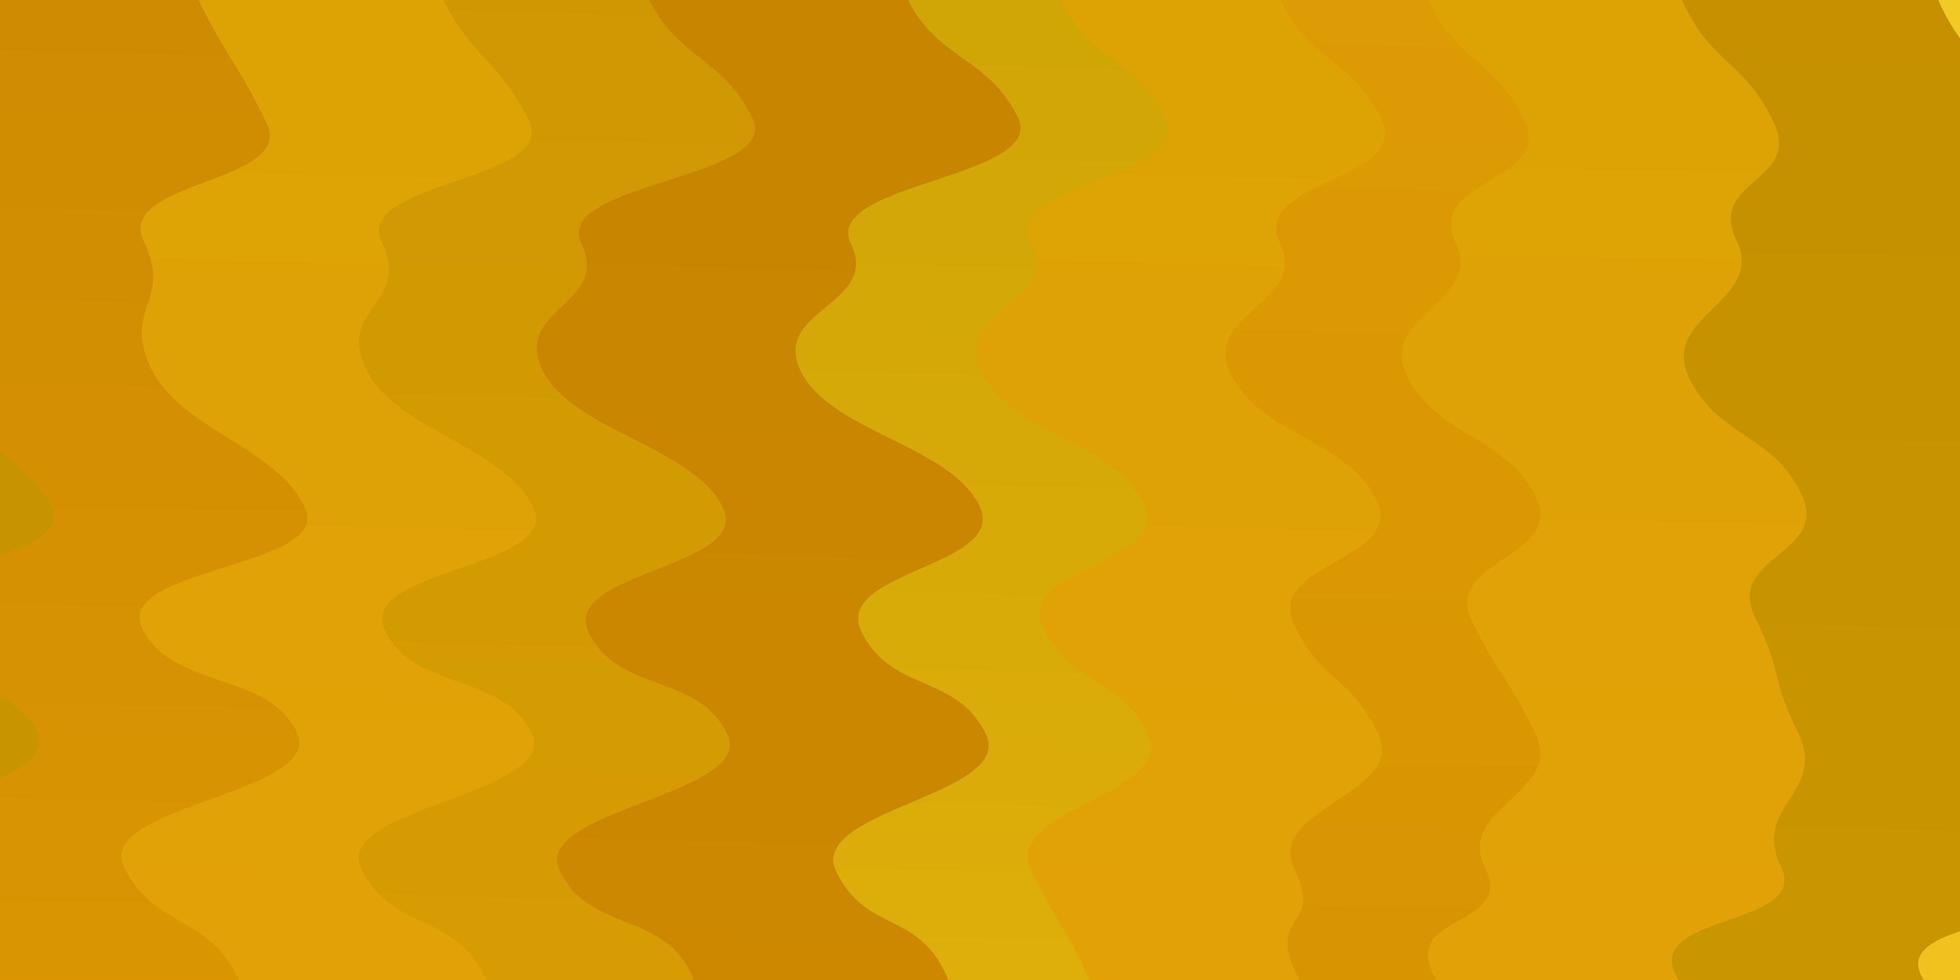 patrón de vector amarillo oscuro con líneas torcidas.